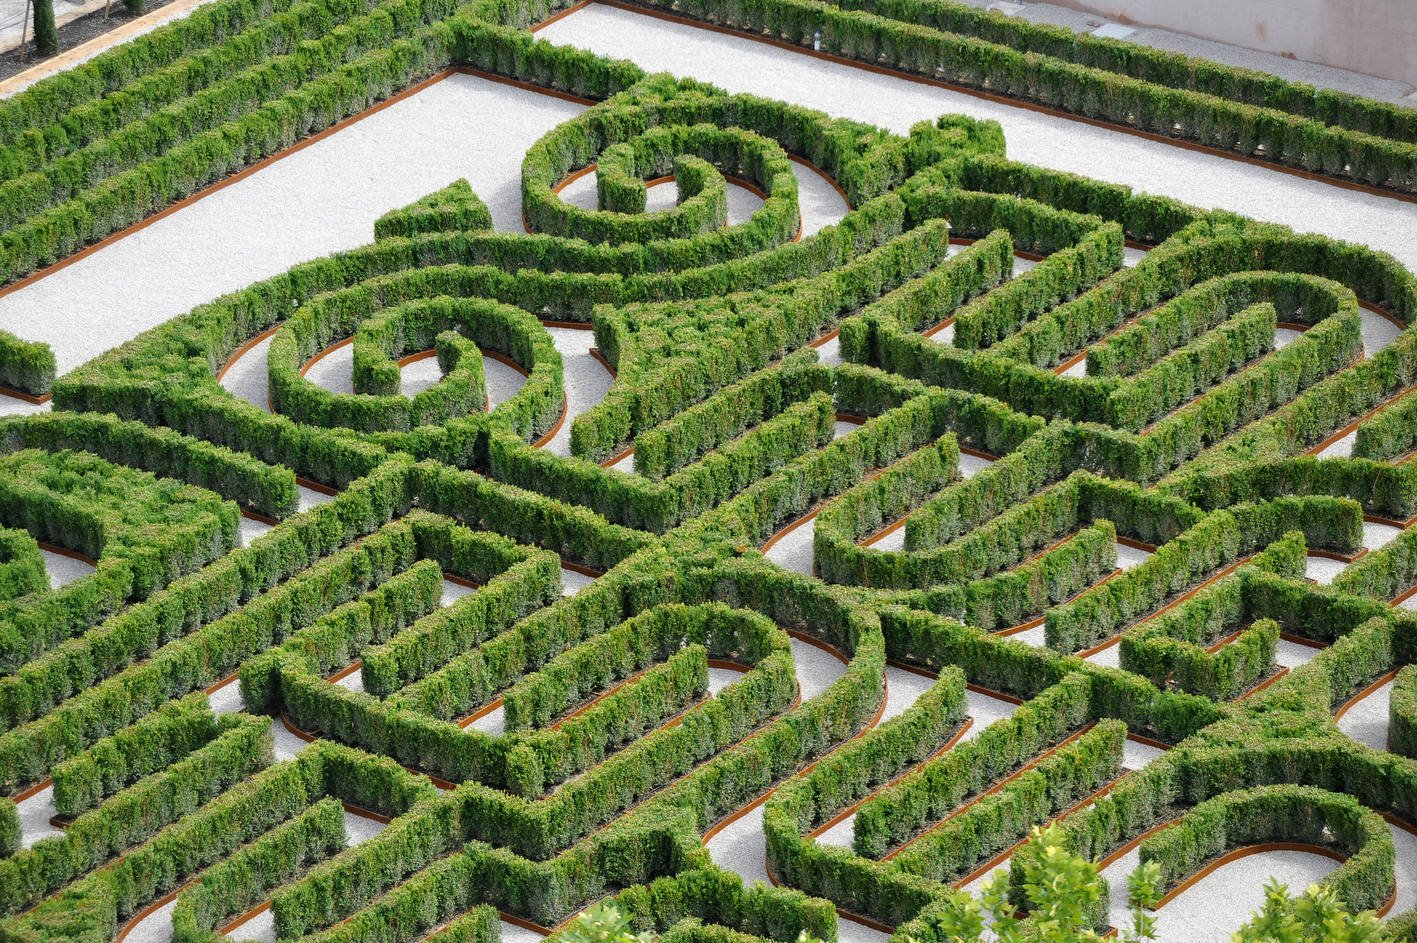 Labirinto Borges nell'isola di San Giorgio Maggiore alla Fondazione Cini, Venezia